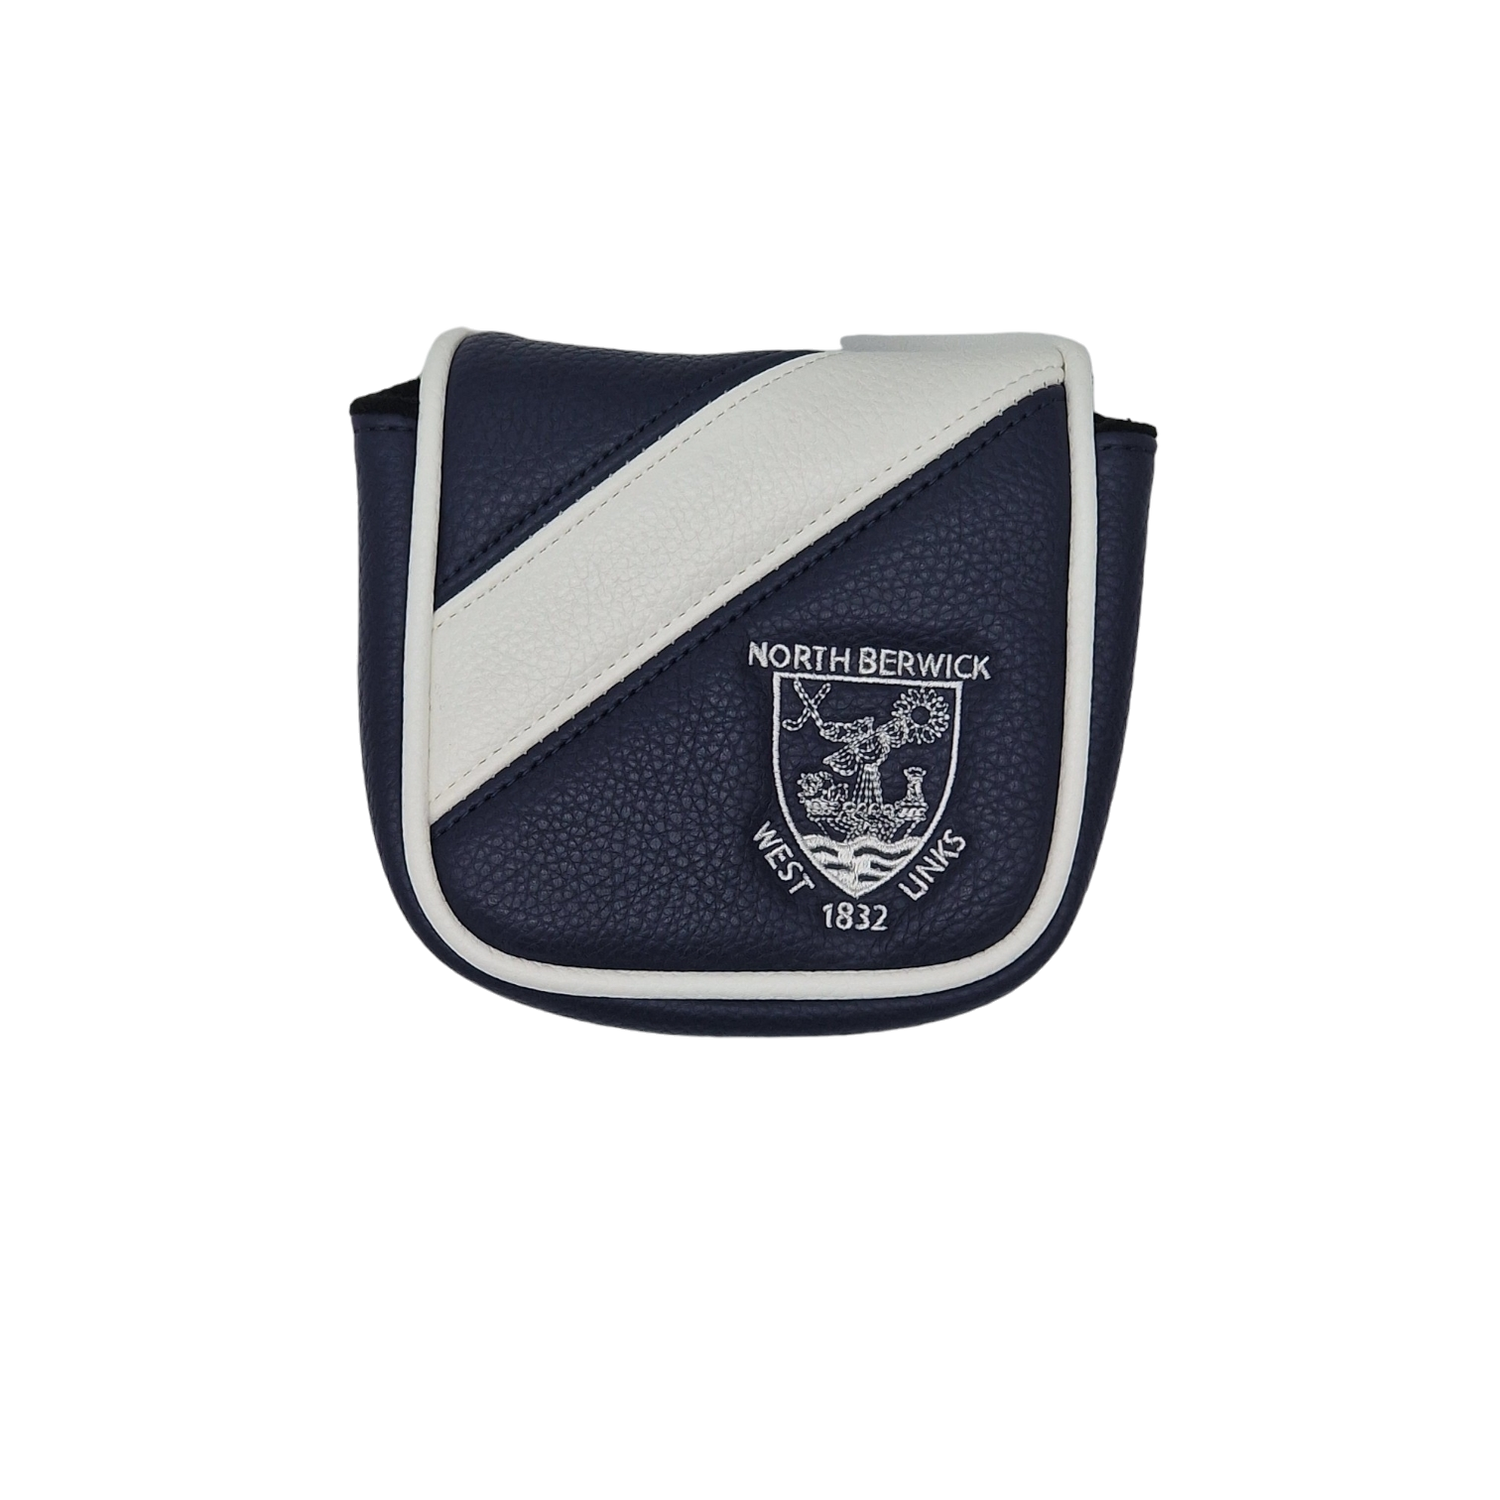 Navy/White Stripe Mallet Putter Cover